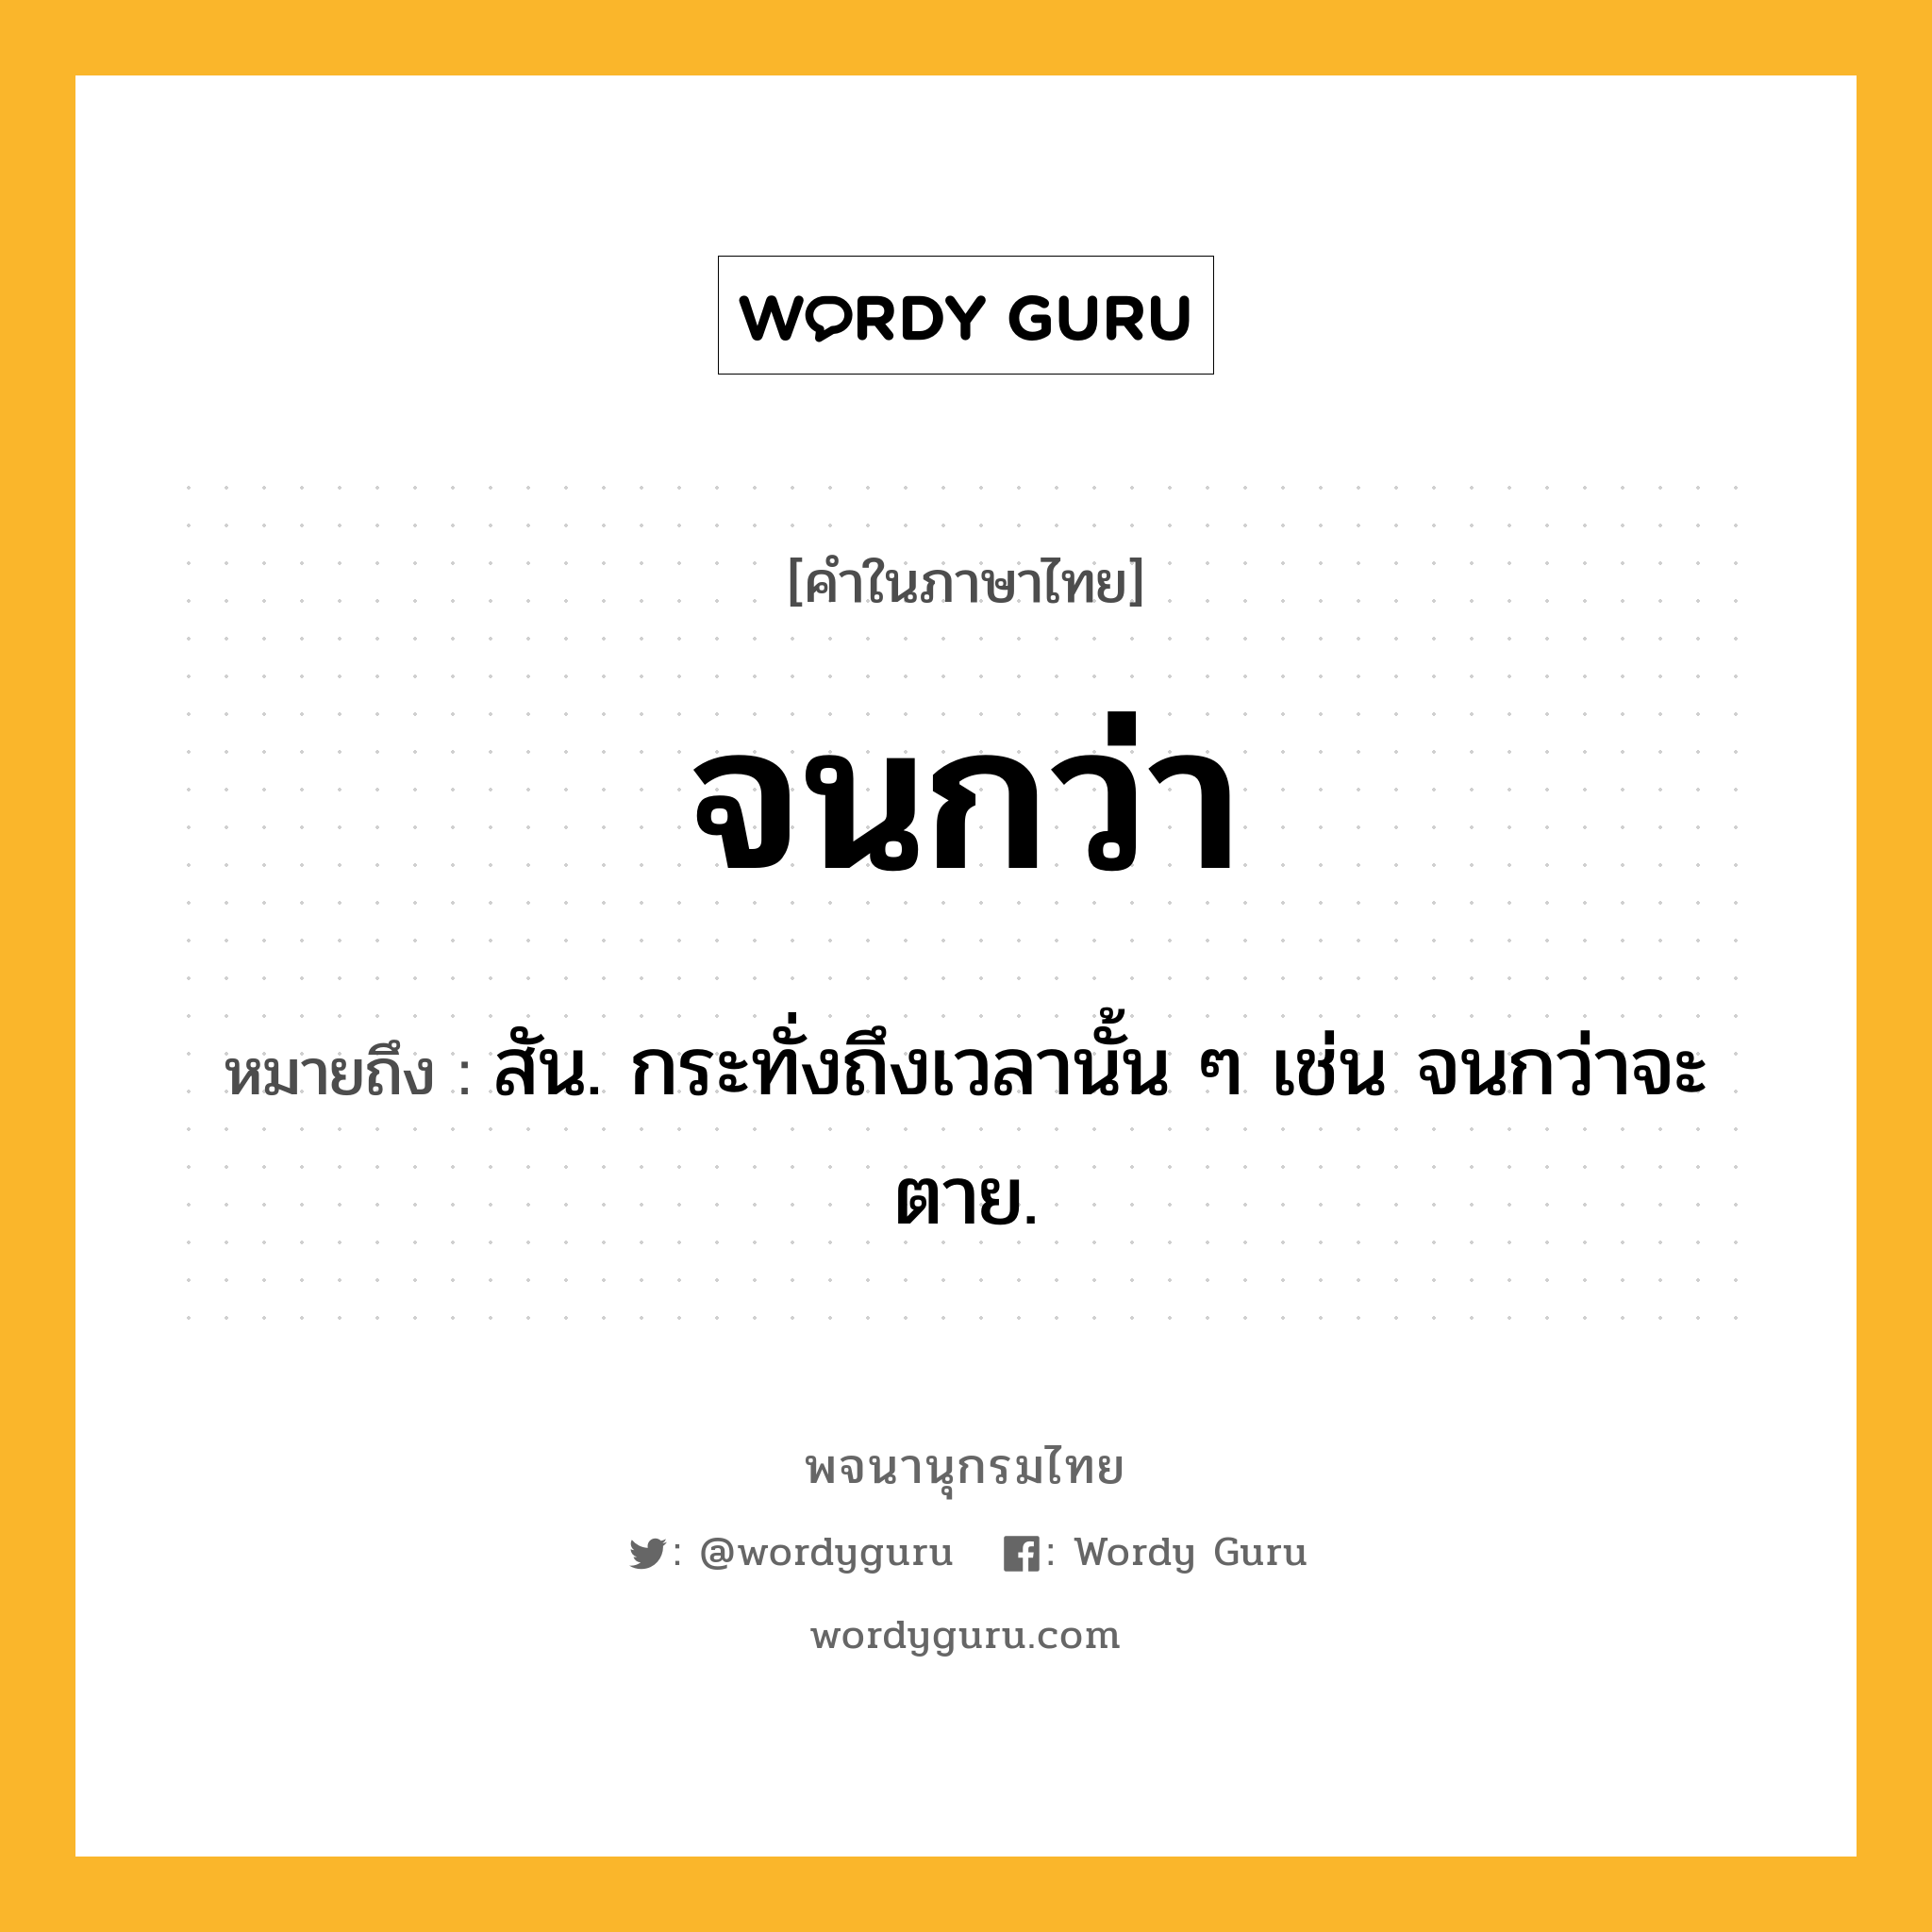 จนกว่า หมายถึงอะไร?, คำในภาษาไทย จนกว่า หมายถึง สัน. กระทั่งถึงเวลานั้น ๆ เช่น จนกว่าจะตาย.